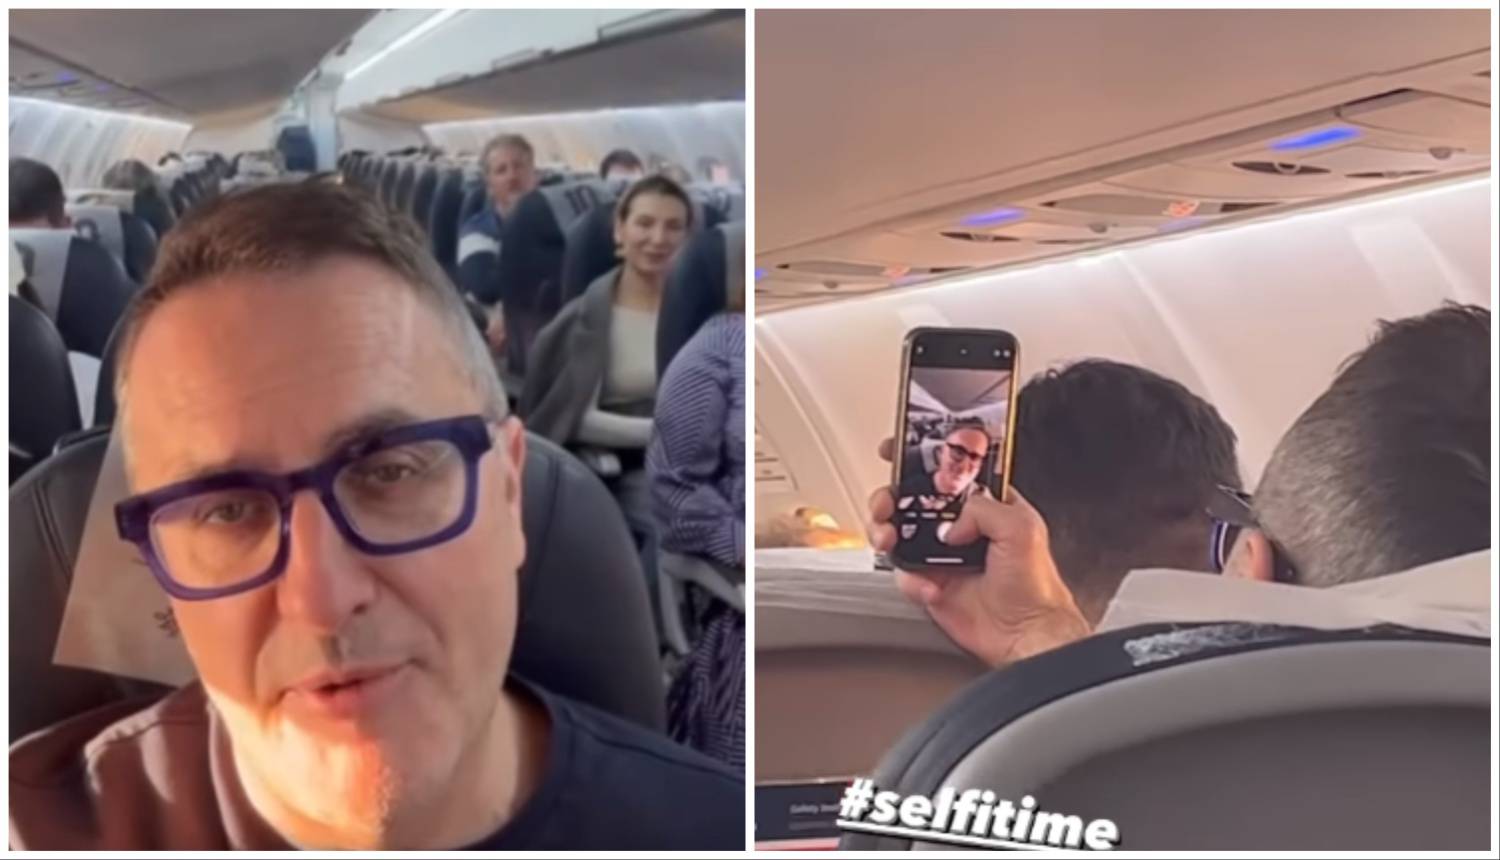 Tarik Filipović fotka se u avionu, Daria Lorenci Flatz sjedila iza njega: 'Ma dobar je selfie ajde'